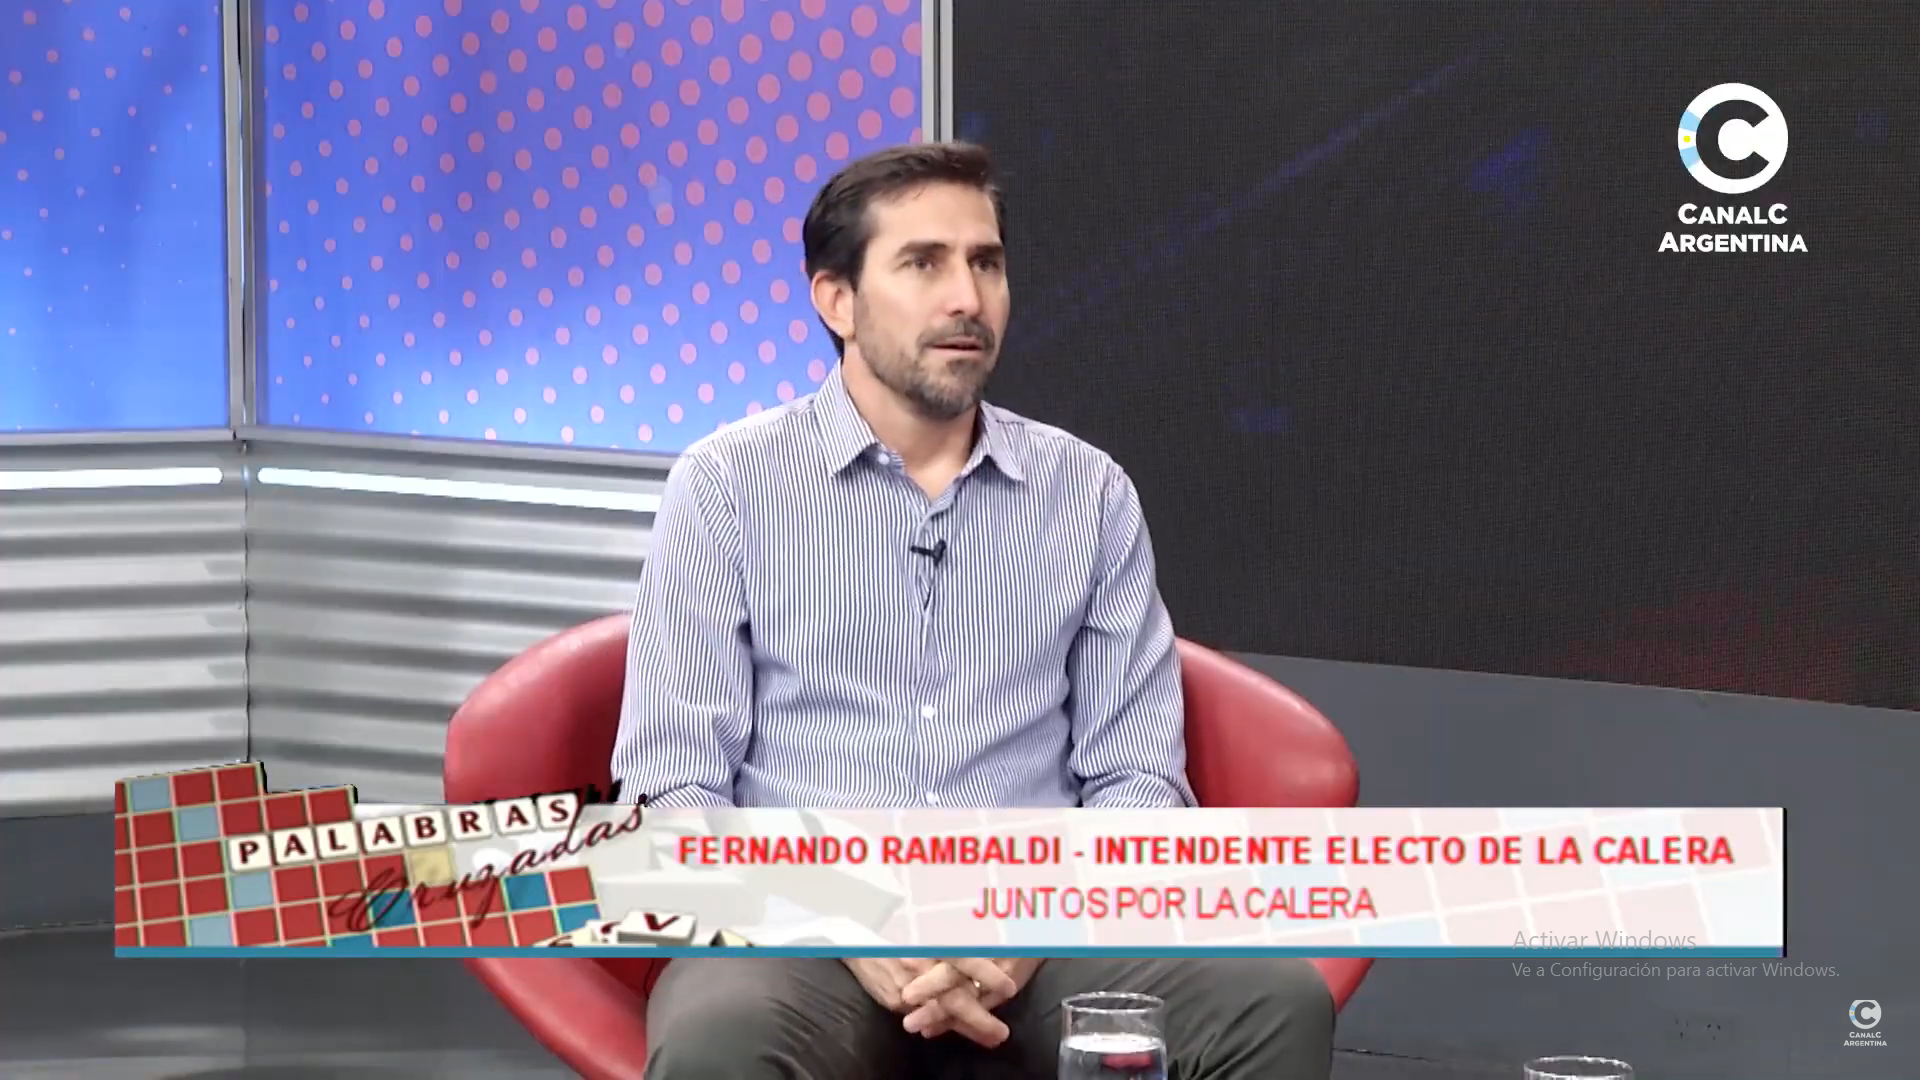 Fernando Rambaldi "El vecino está cansado de la casta política que se ha dedicado a servirse y no a servir" • Canal C